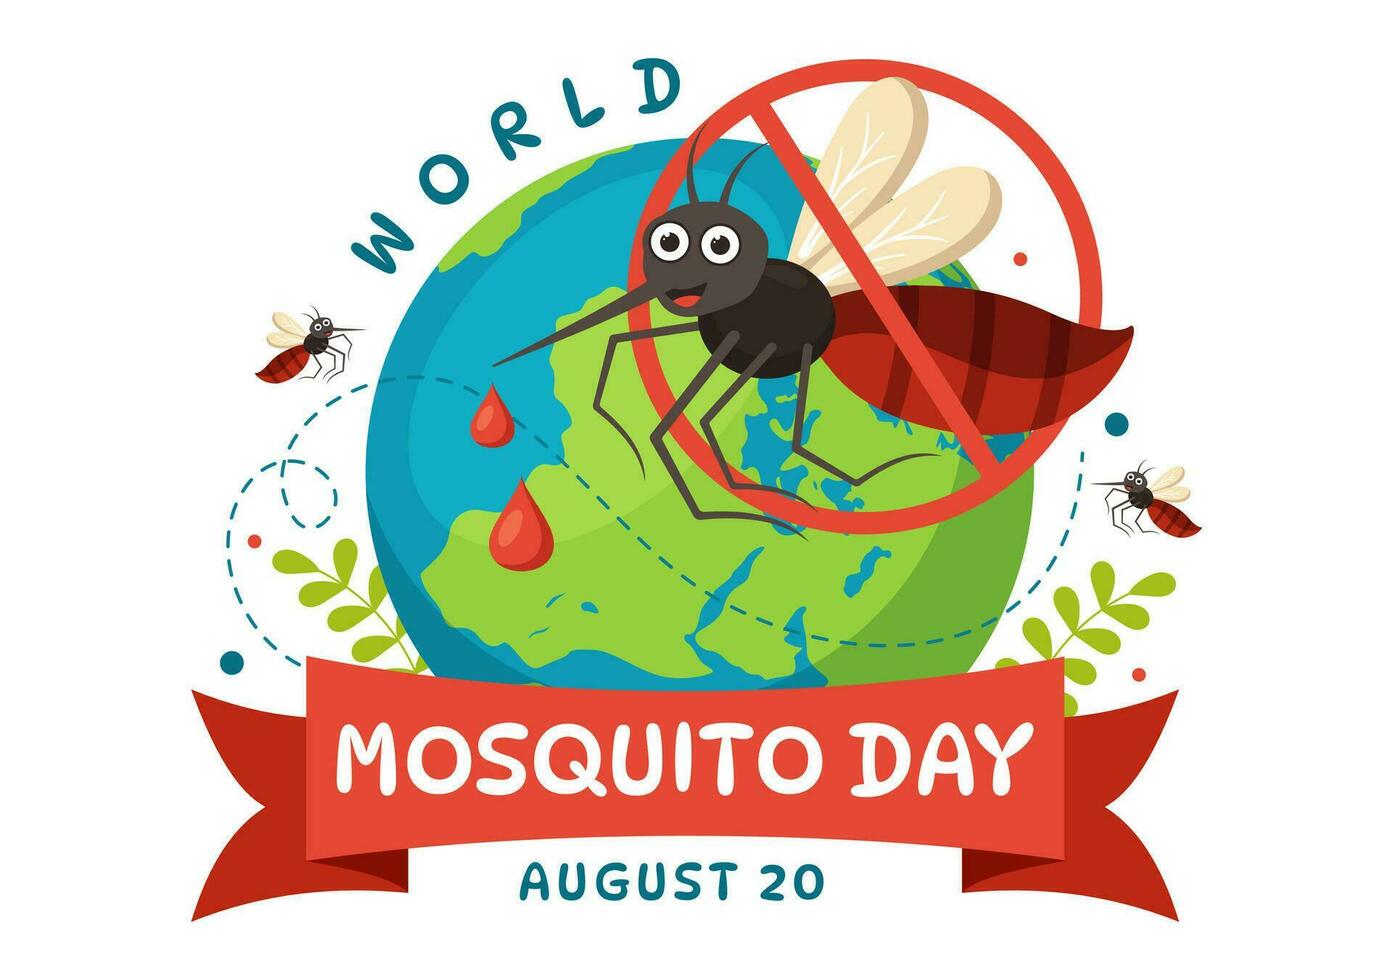 Welt Moskito Tag Vektor Illustration auf 20 August mit Mücke können Ursache Dengue-Fieber Fieber und Malaria im eben Karikatur Hand gezeichnet Hintergrund Vorlagen